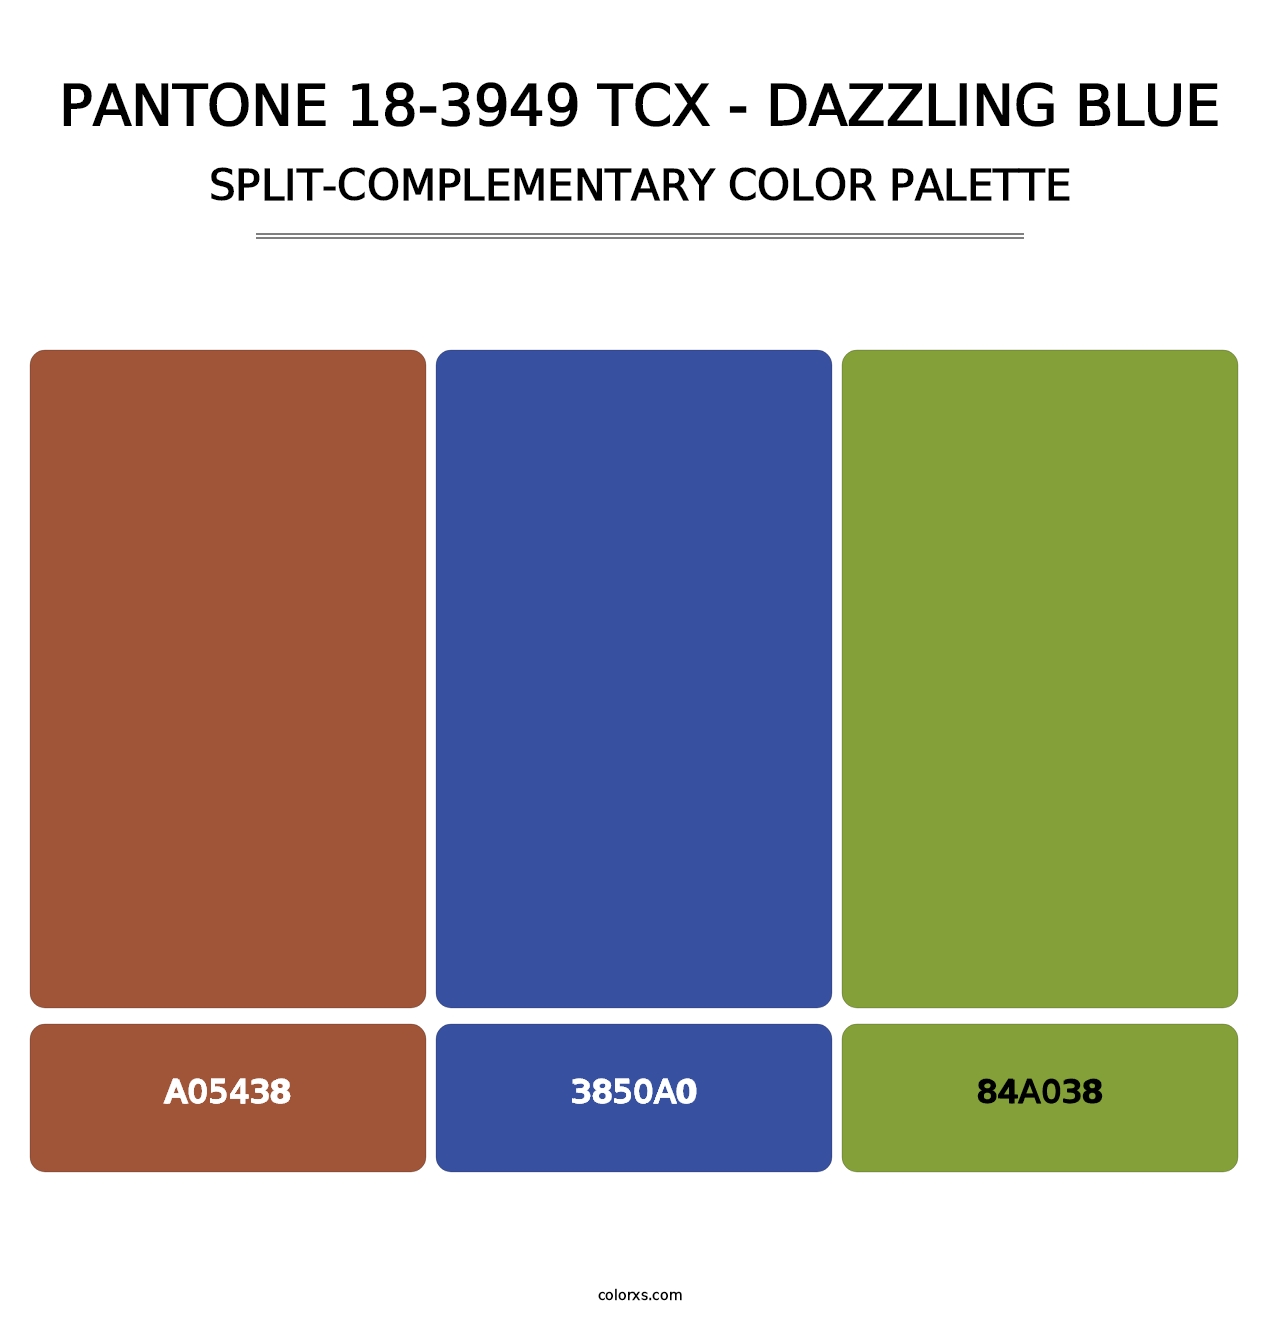 PANTONE 18-3949 TCX - Dazzling Blue - Split-Complementary Color Palette